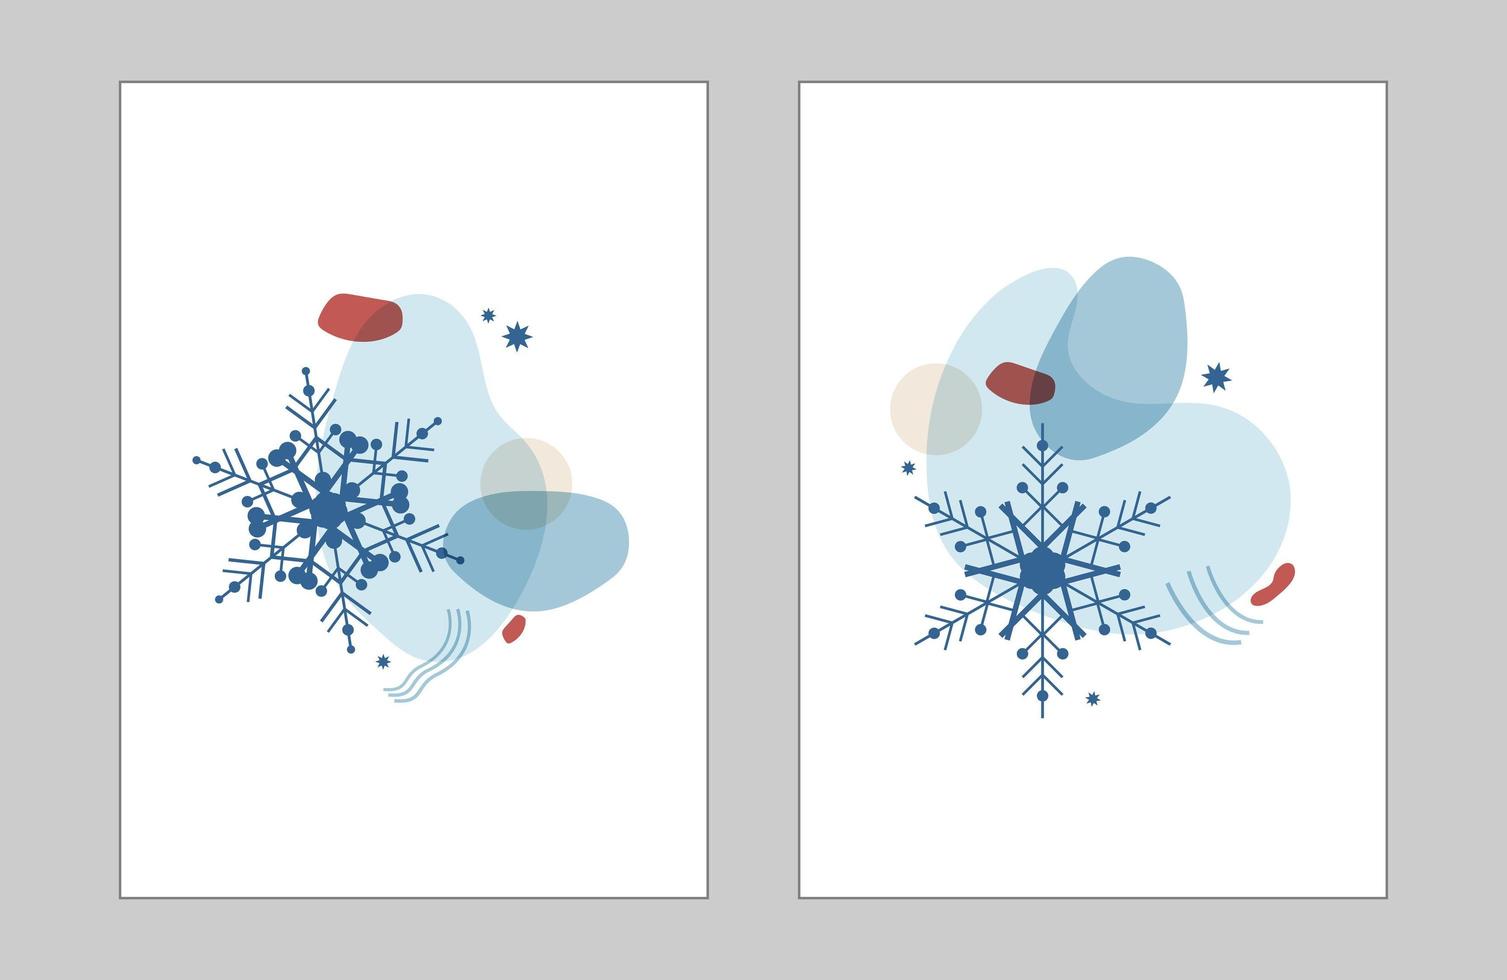 set abstracte winter illustratie van vormen en sneeuwvlokken in blauw met een rood. verticaal decor voor kaarten, posters, uitnodigingen, banners, sociale netwerken voor Kerstmis en Nieuwjaar. vector geïsoleerd